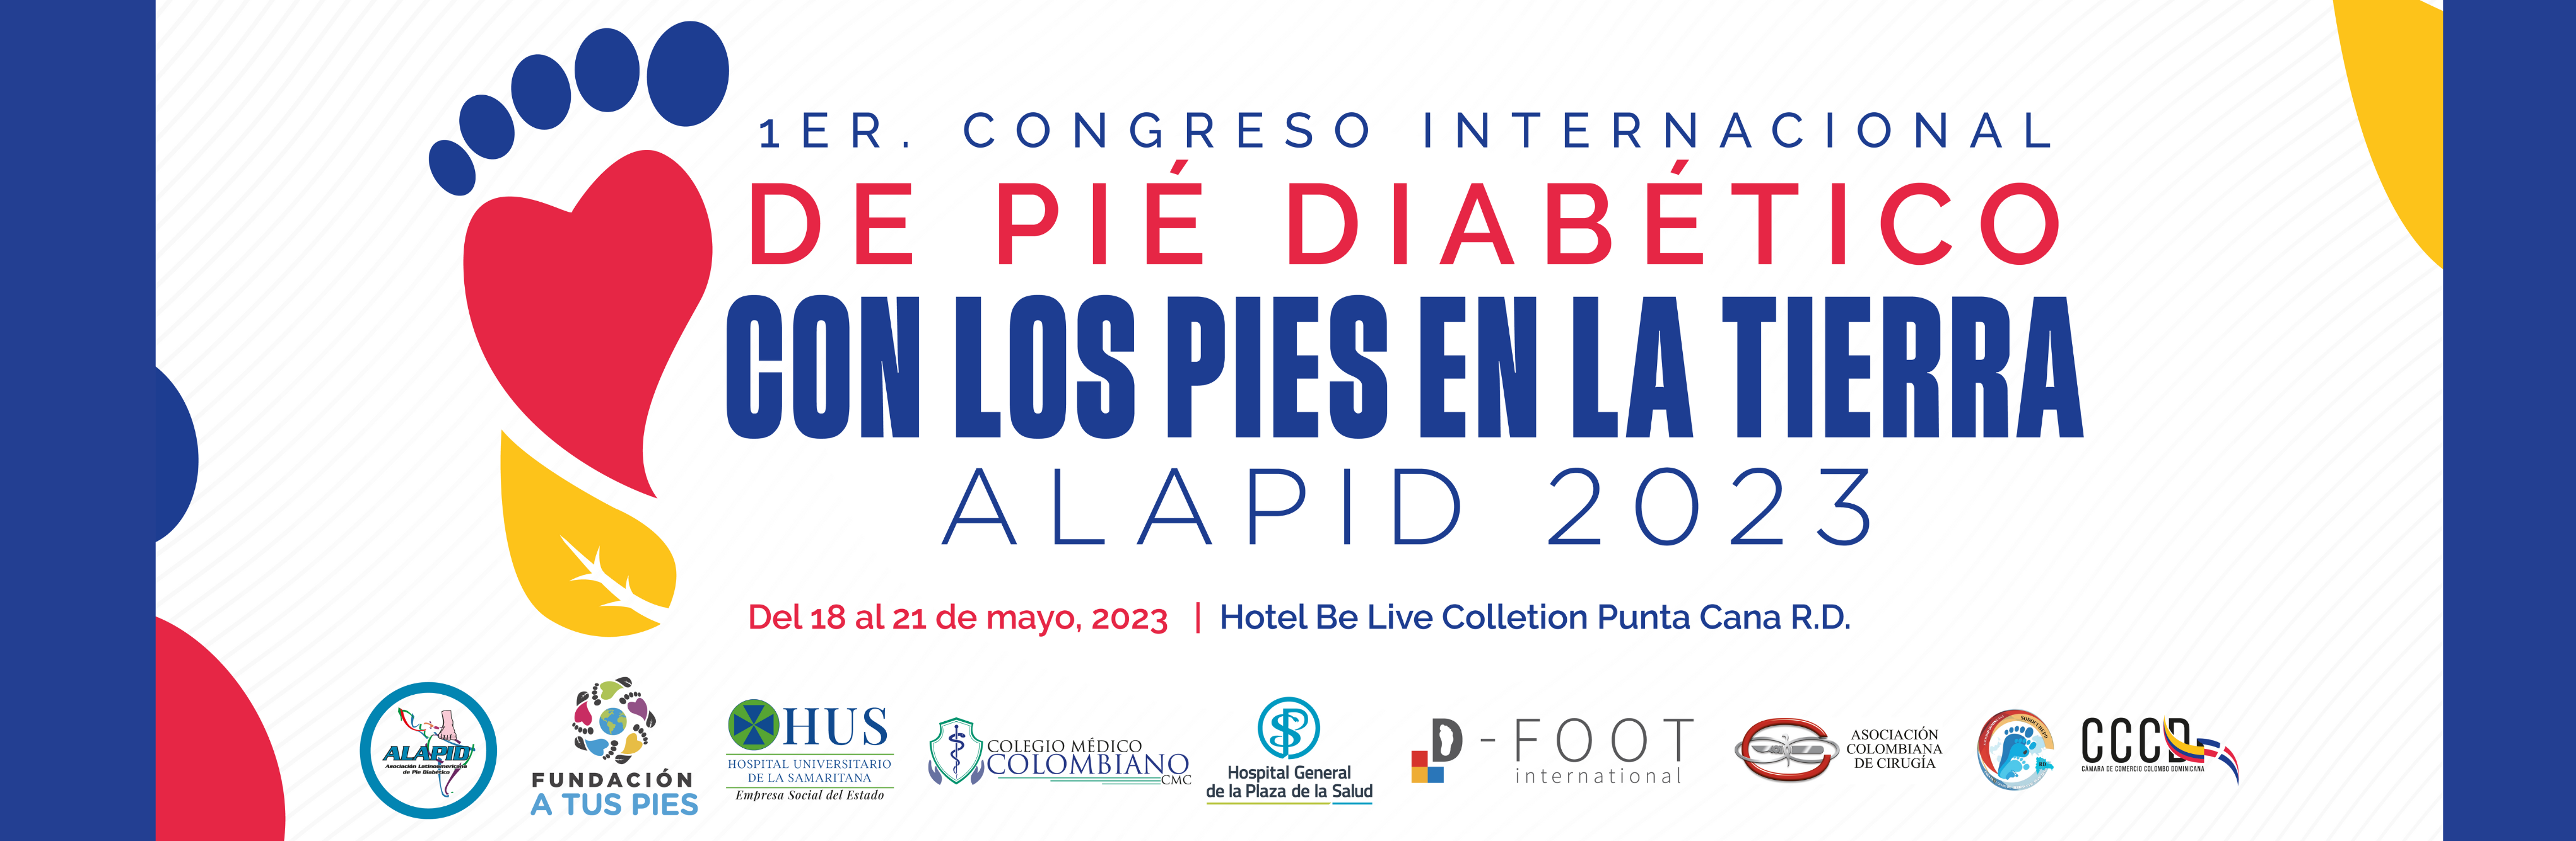 1er Congreso internacional de pie diabetico